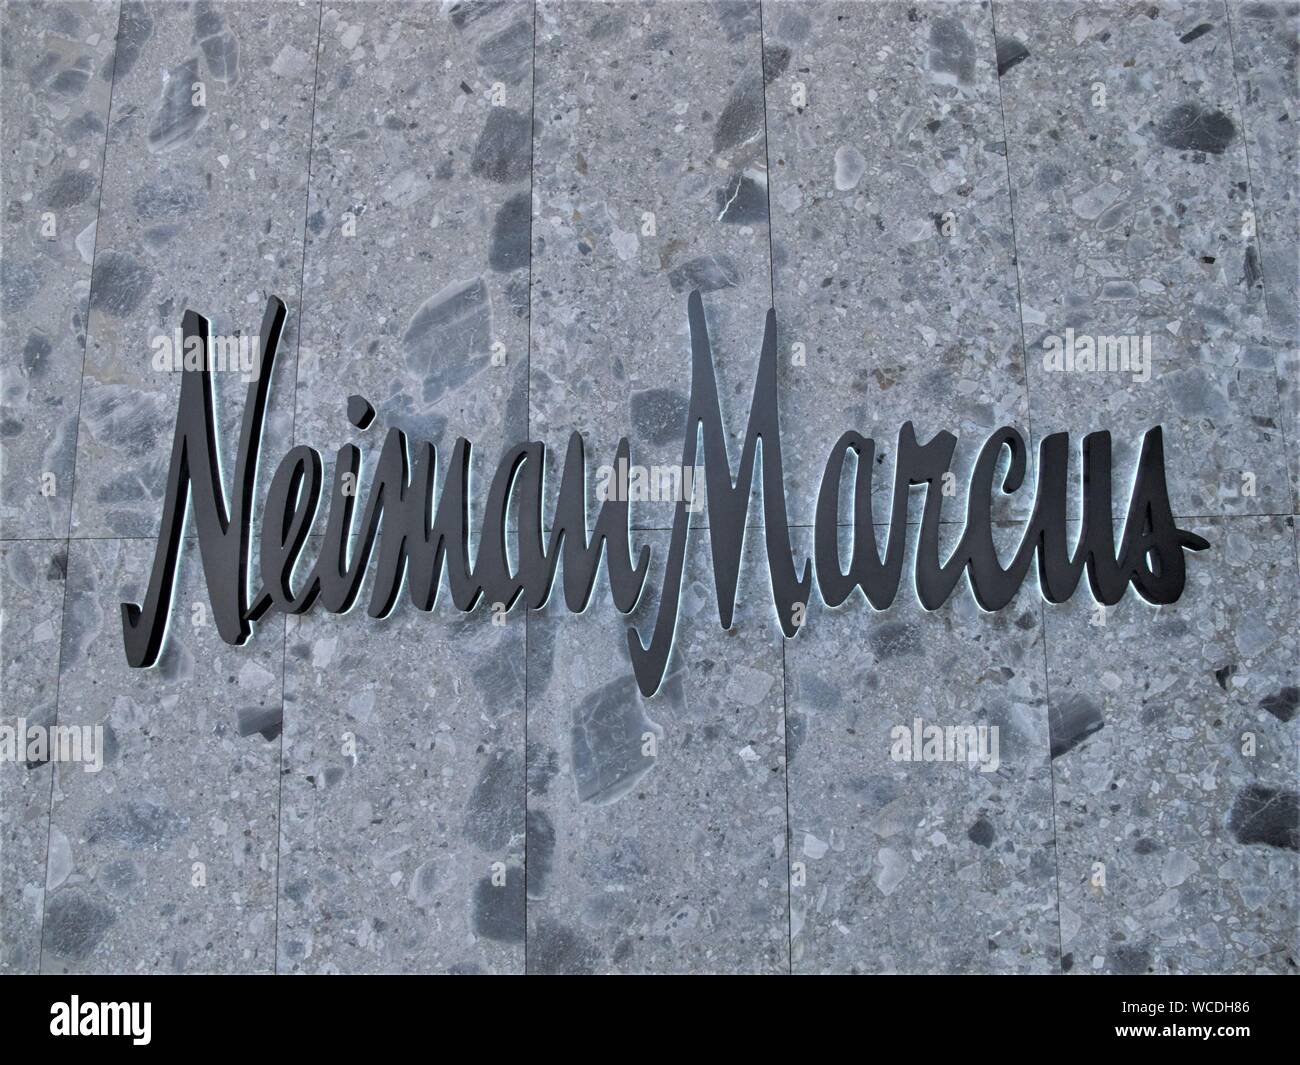 LOGO Neiman Marcus SULLA PARETE IN CANTIERI DI HUDSON SHOPPING CENTER DI NEW YORK Foto Stock